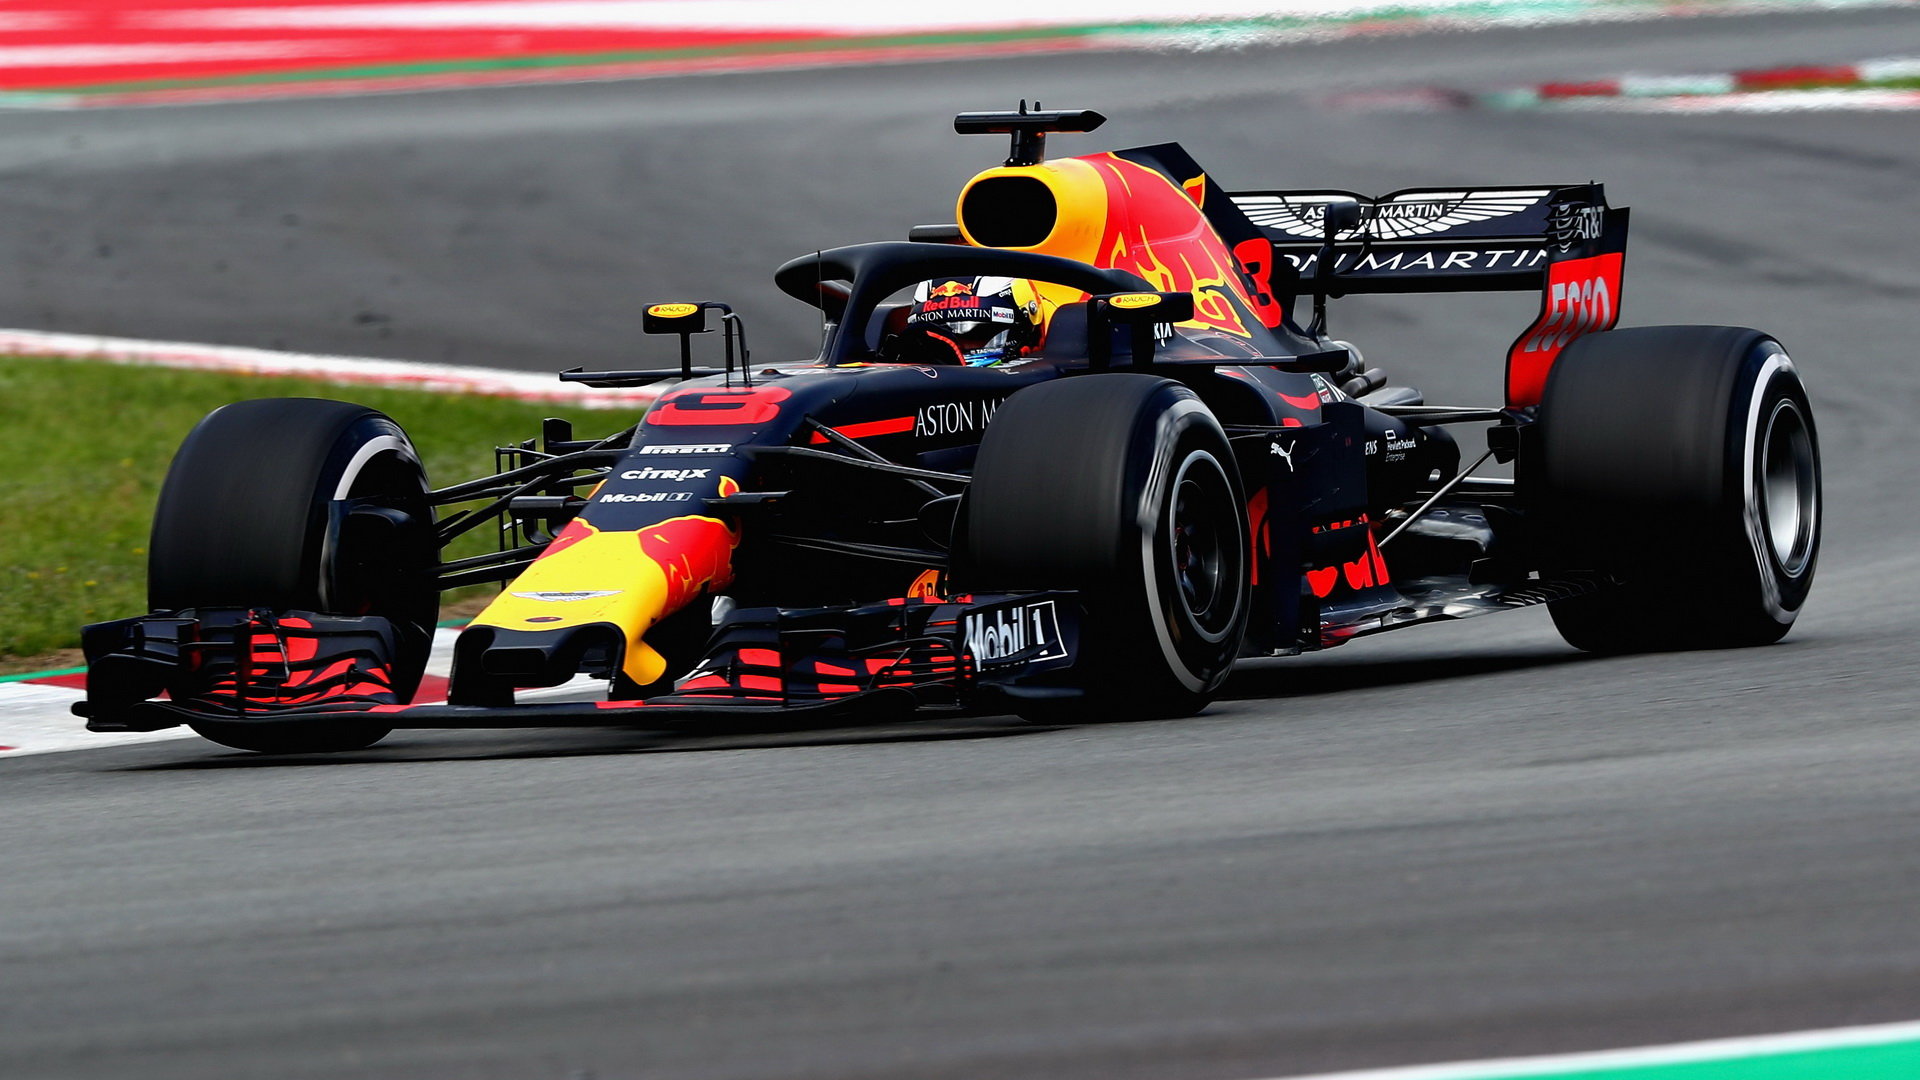 Daniel Ricciardo v závodě ve Španělsku